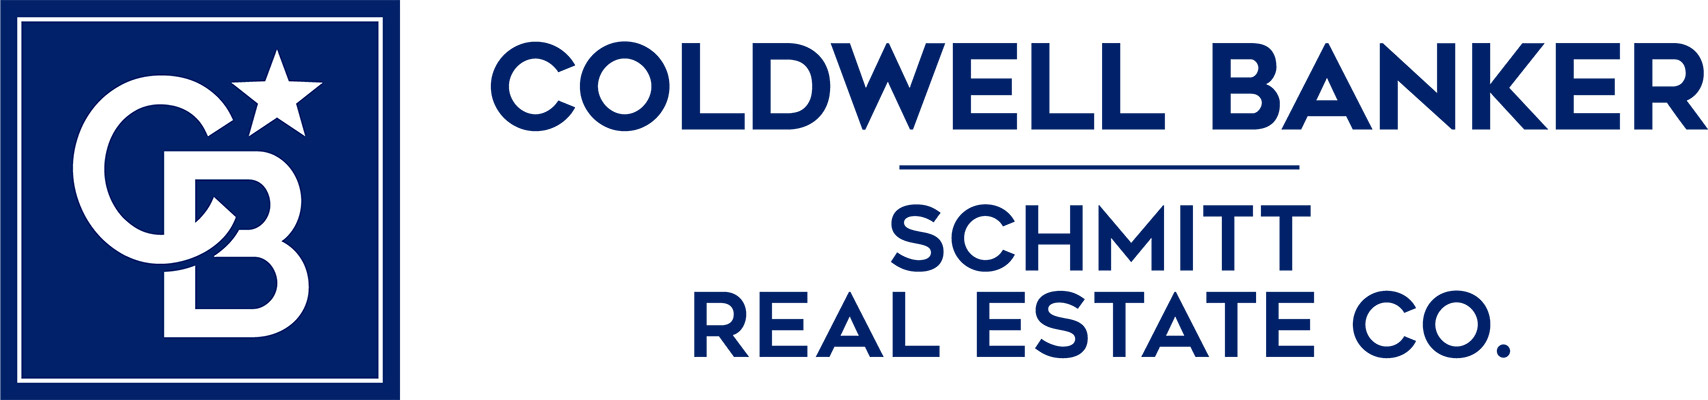 Jan Keller - Coldwell Banker Logo